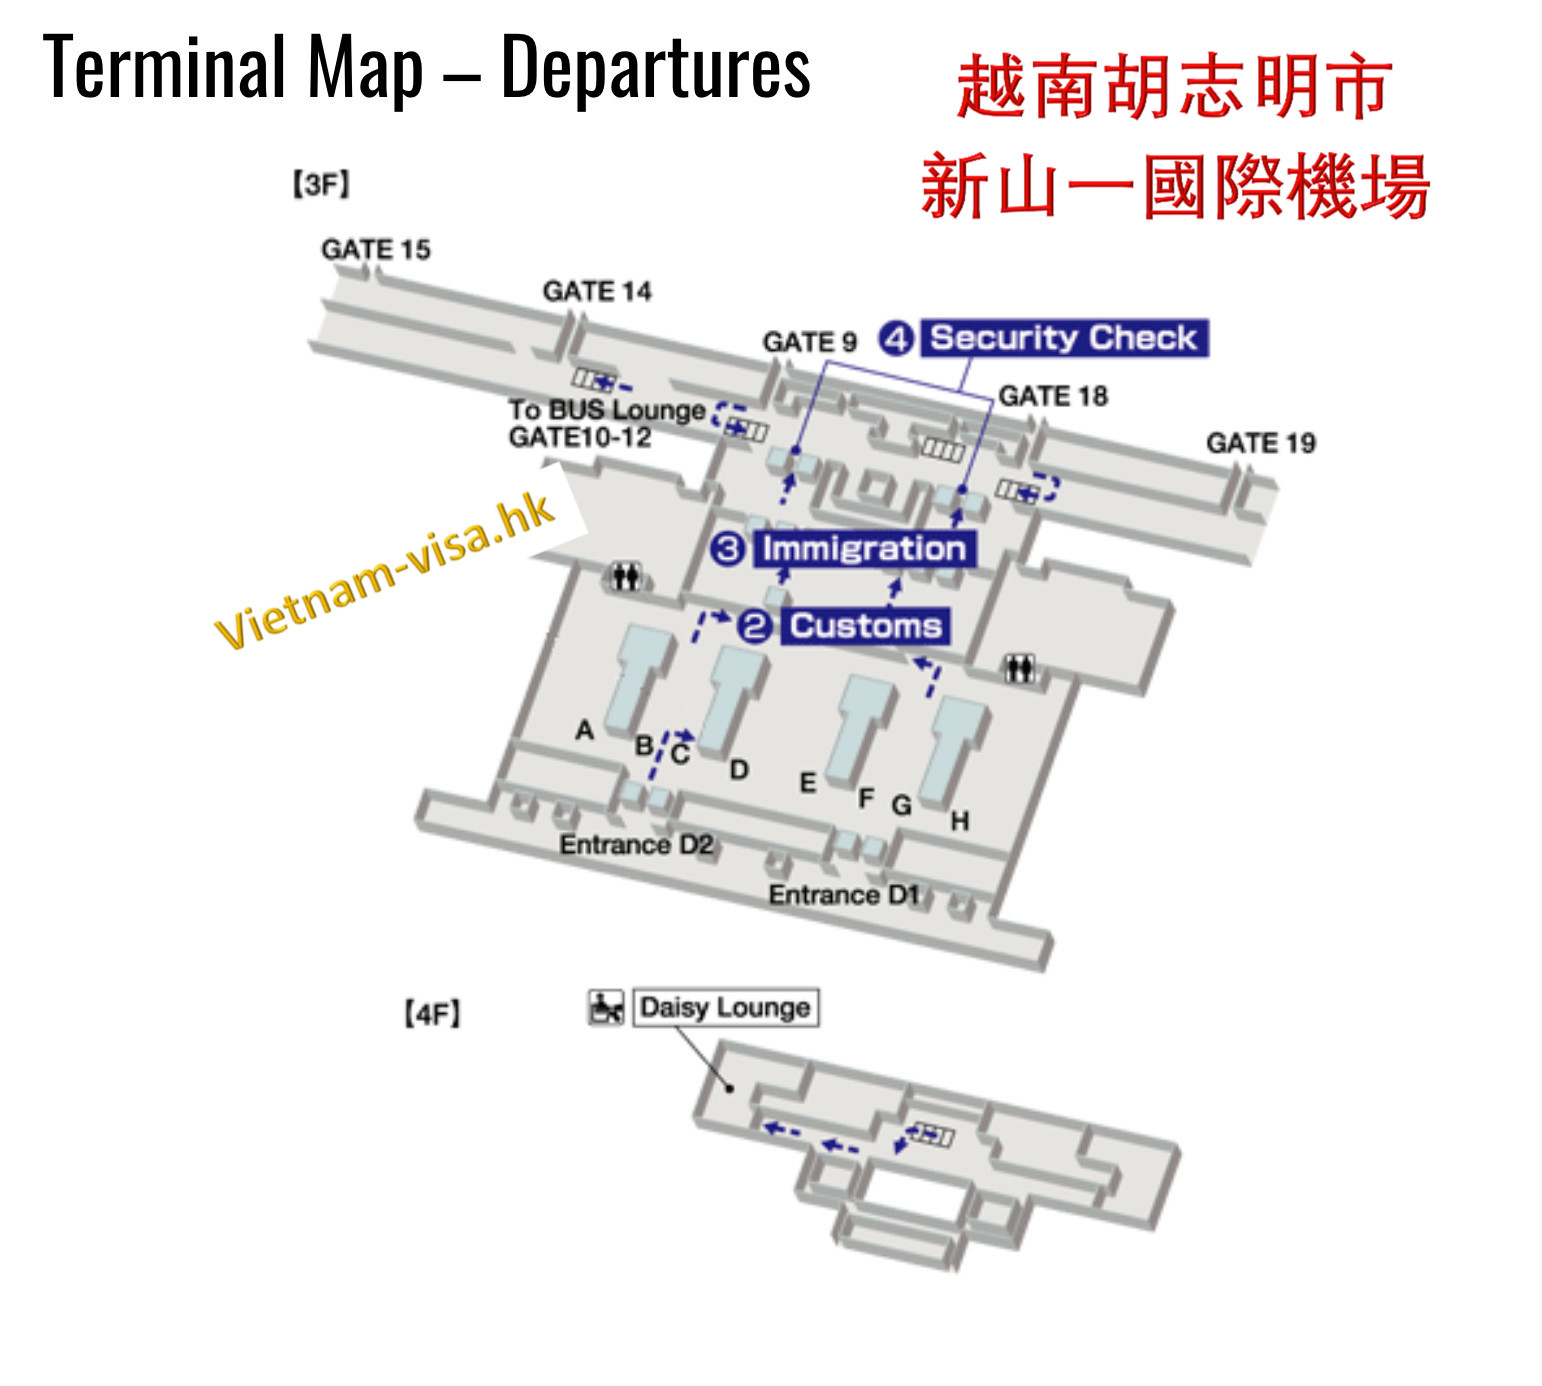 越南新山一机场的地圖 Terminal Map - Departures